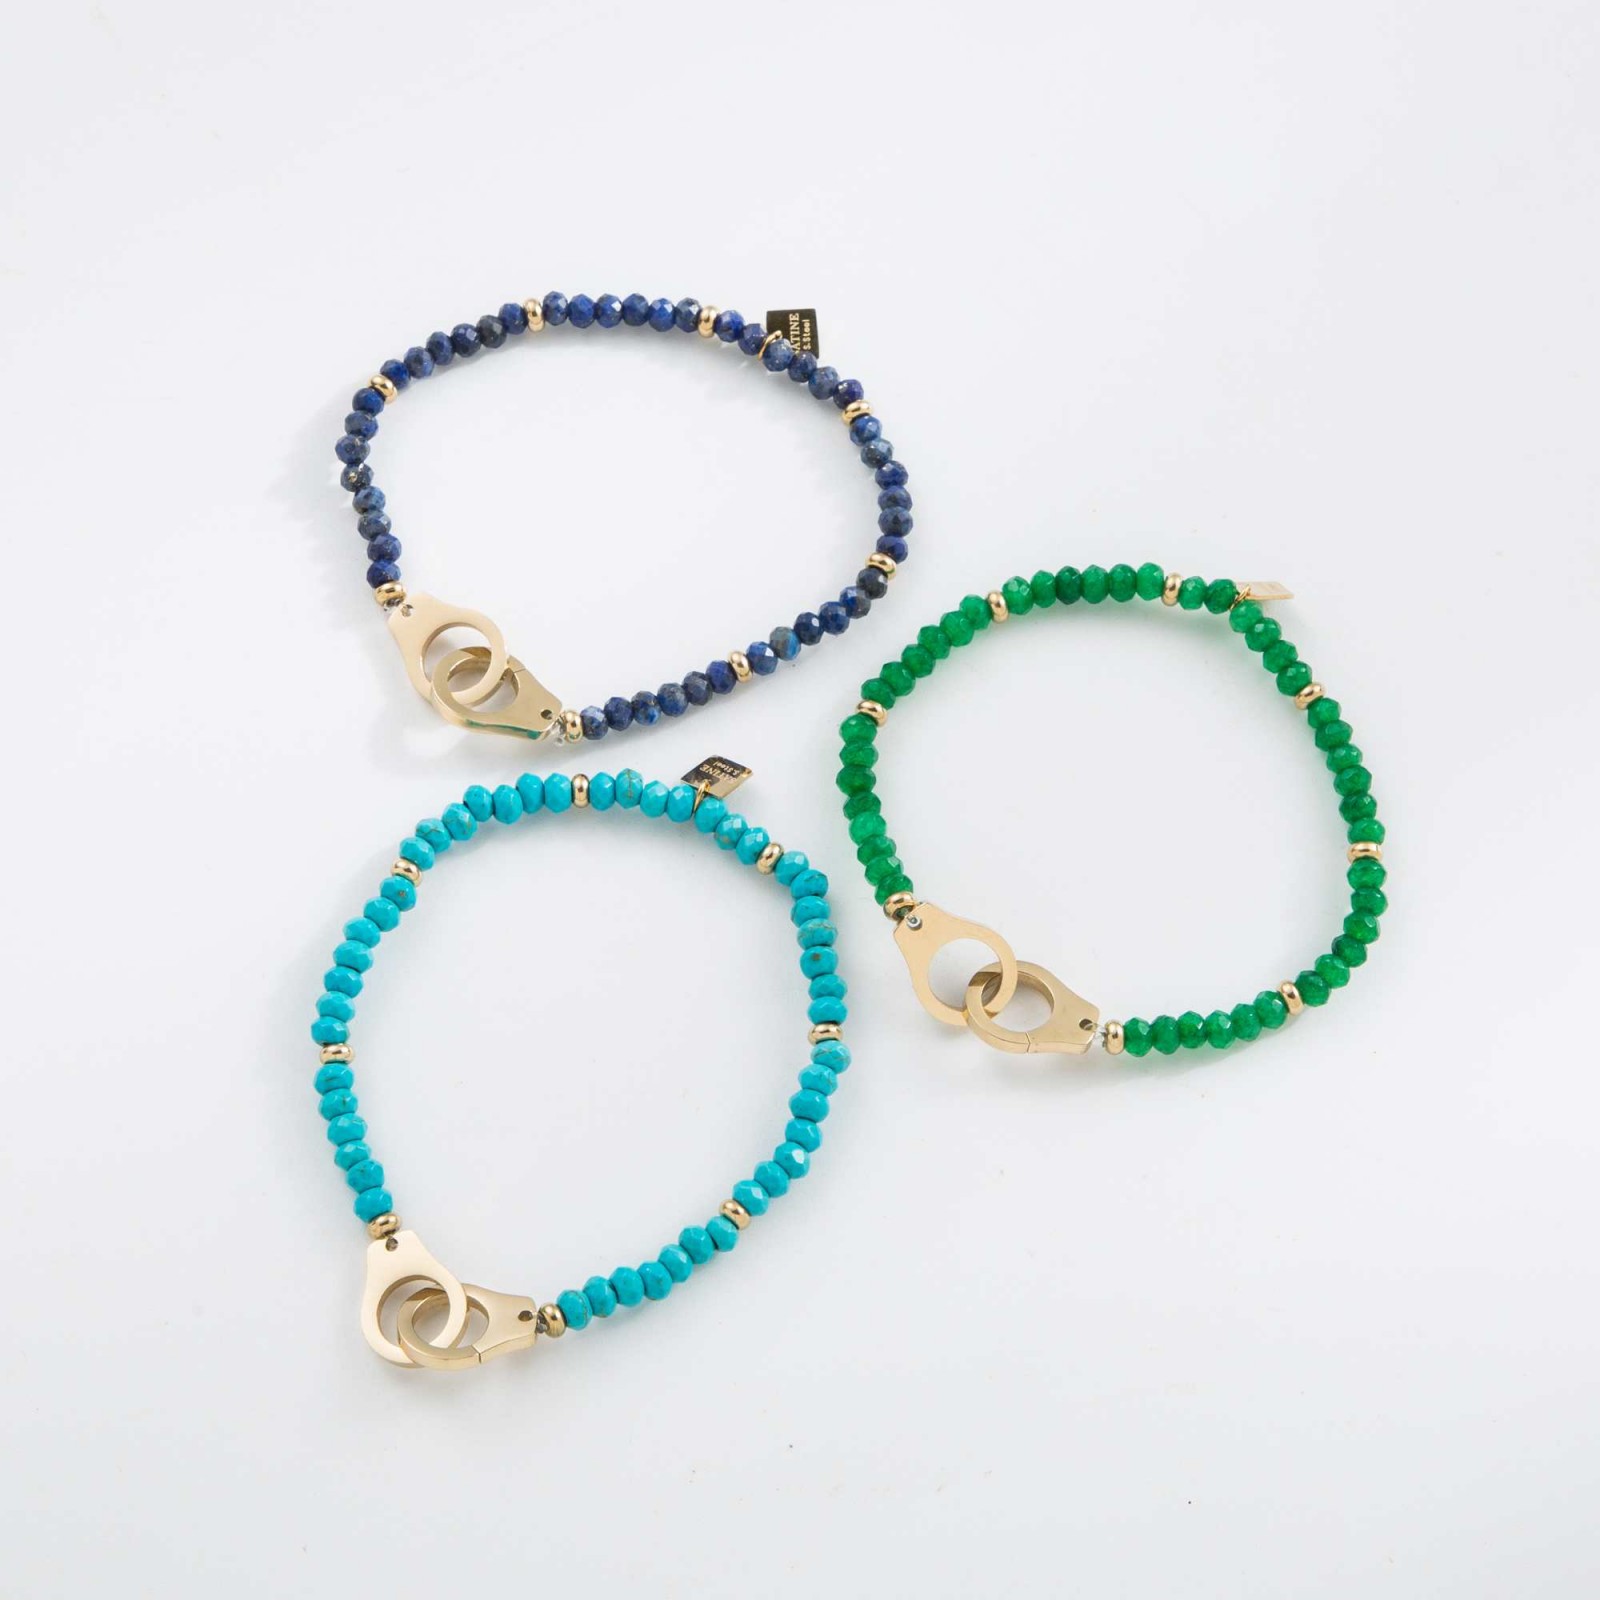 Bracelet chaine Color:Navy Blue